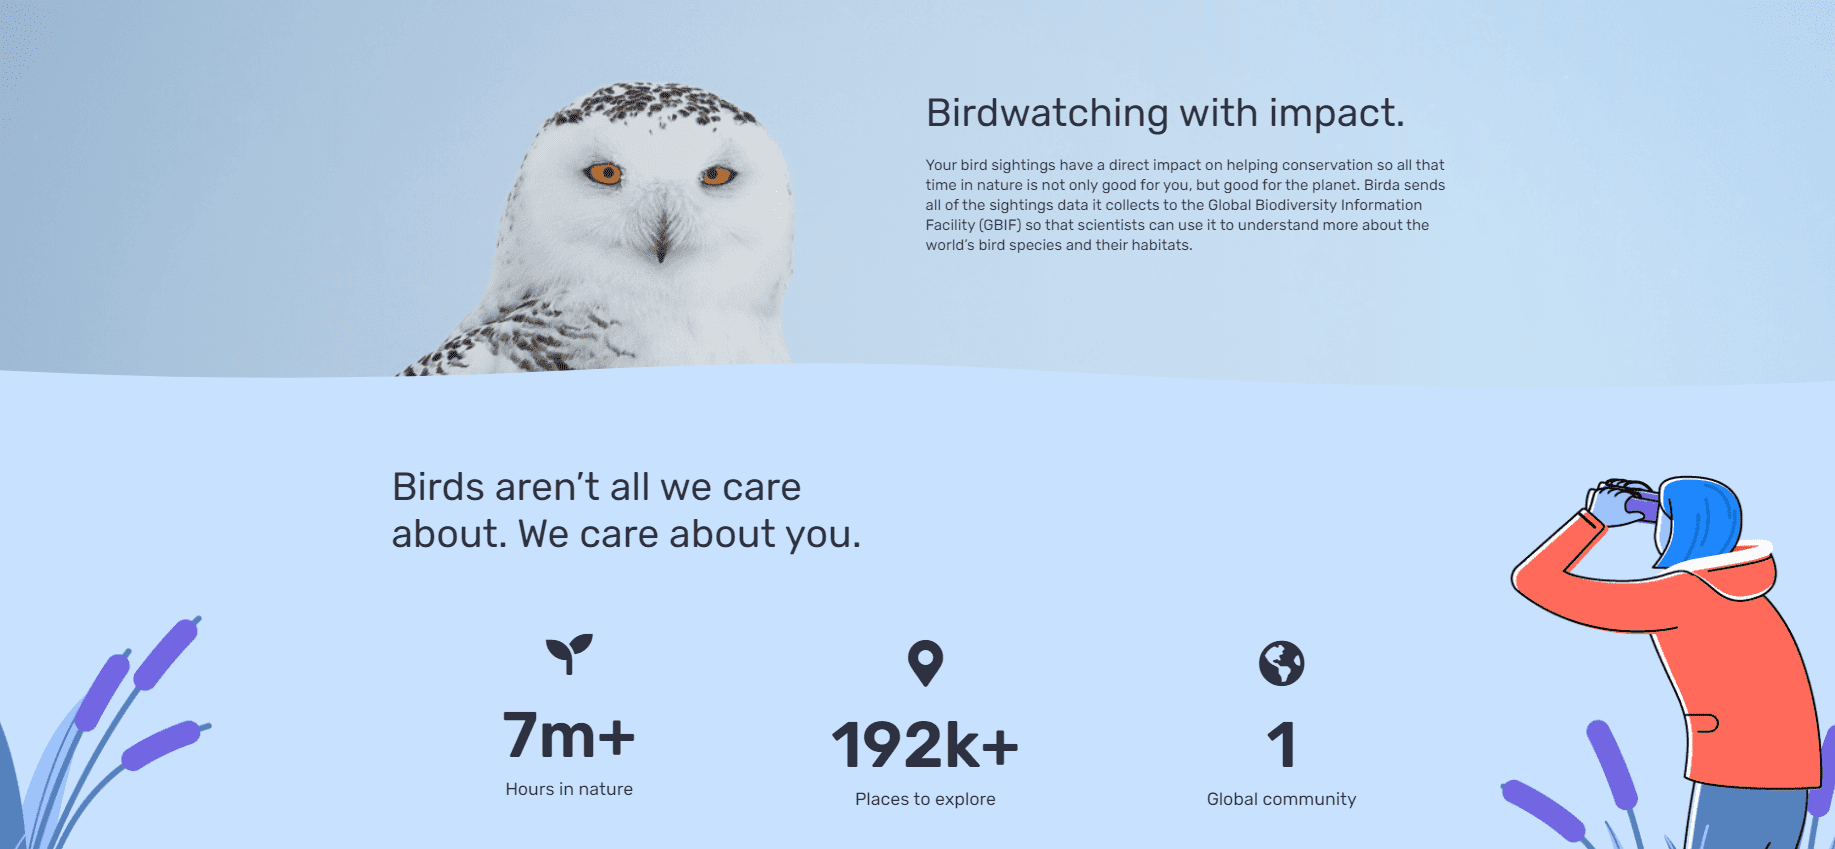 birdwatching benefits